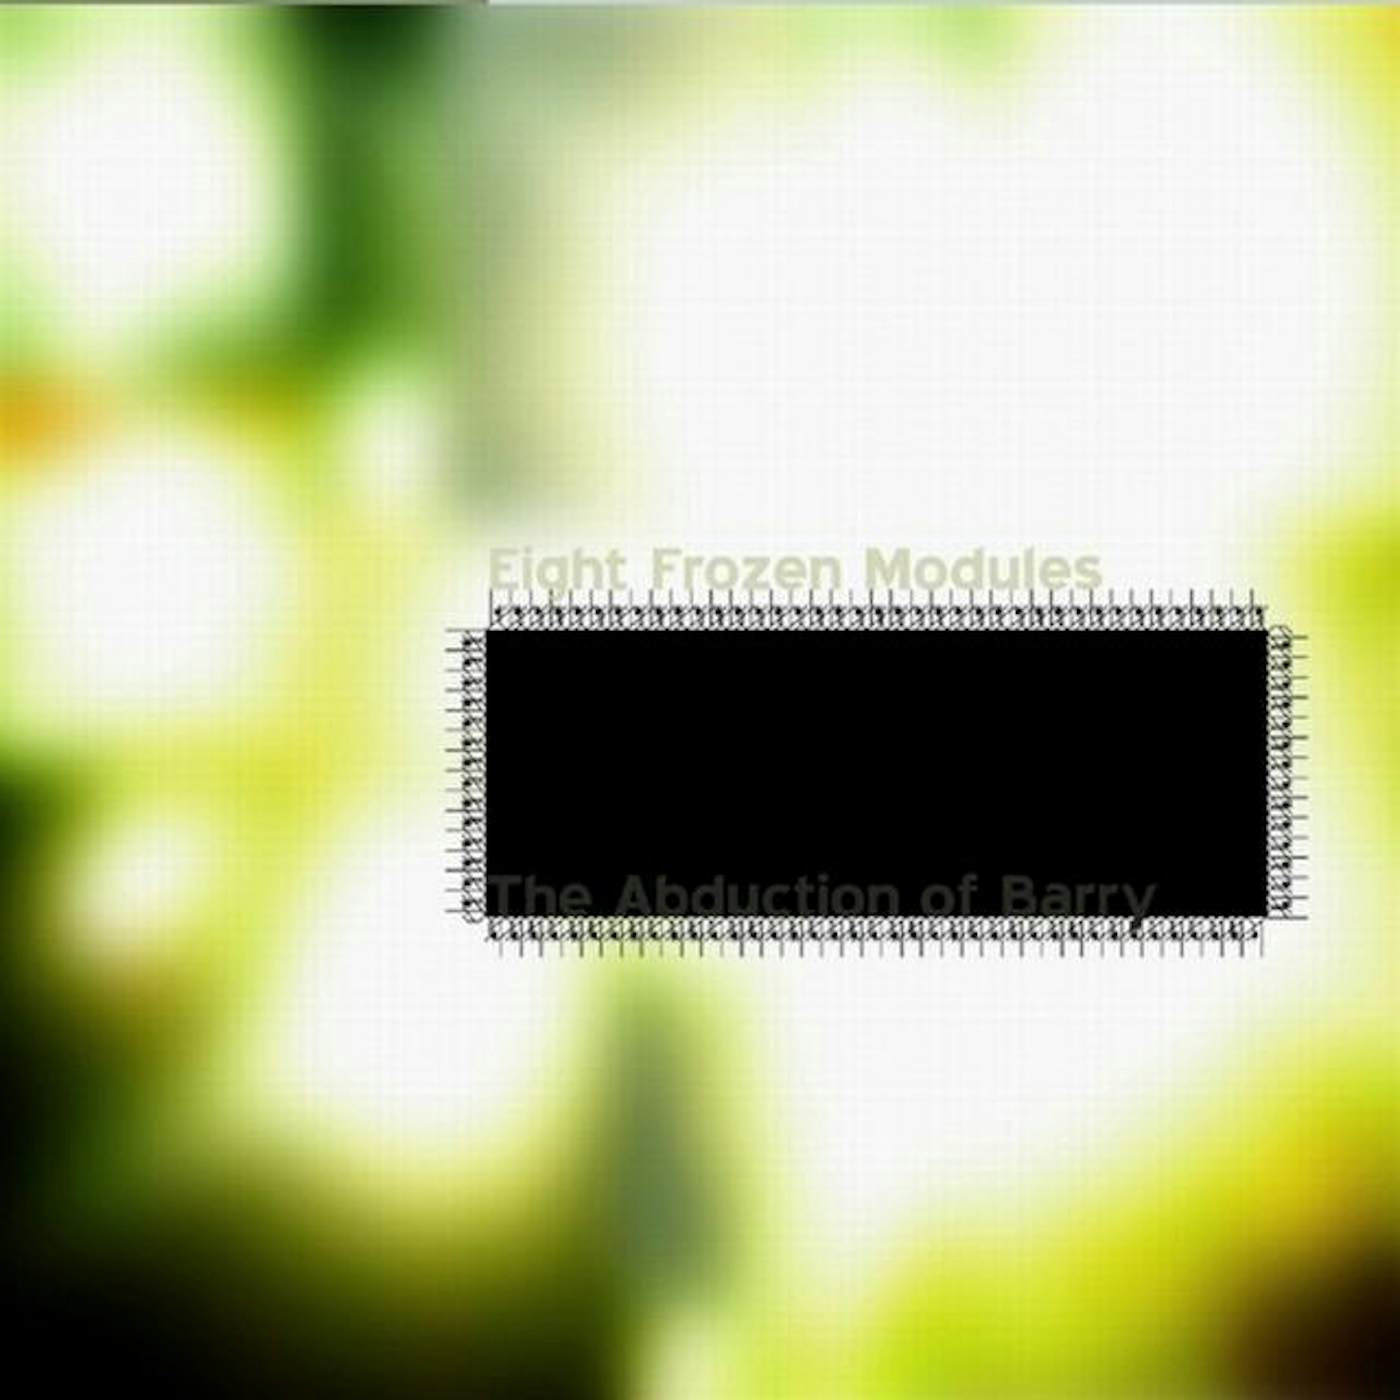 Eight Frozen Modules